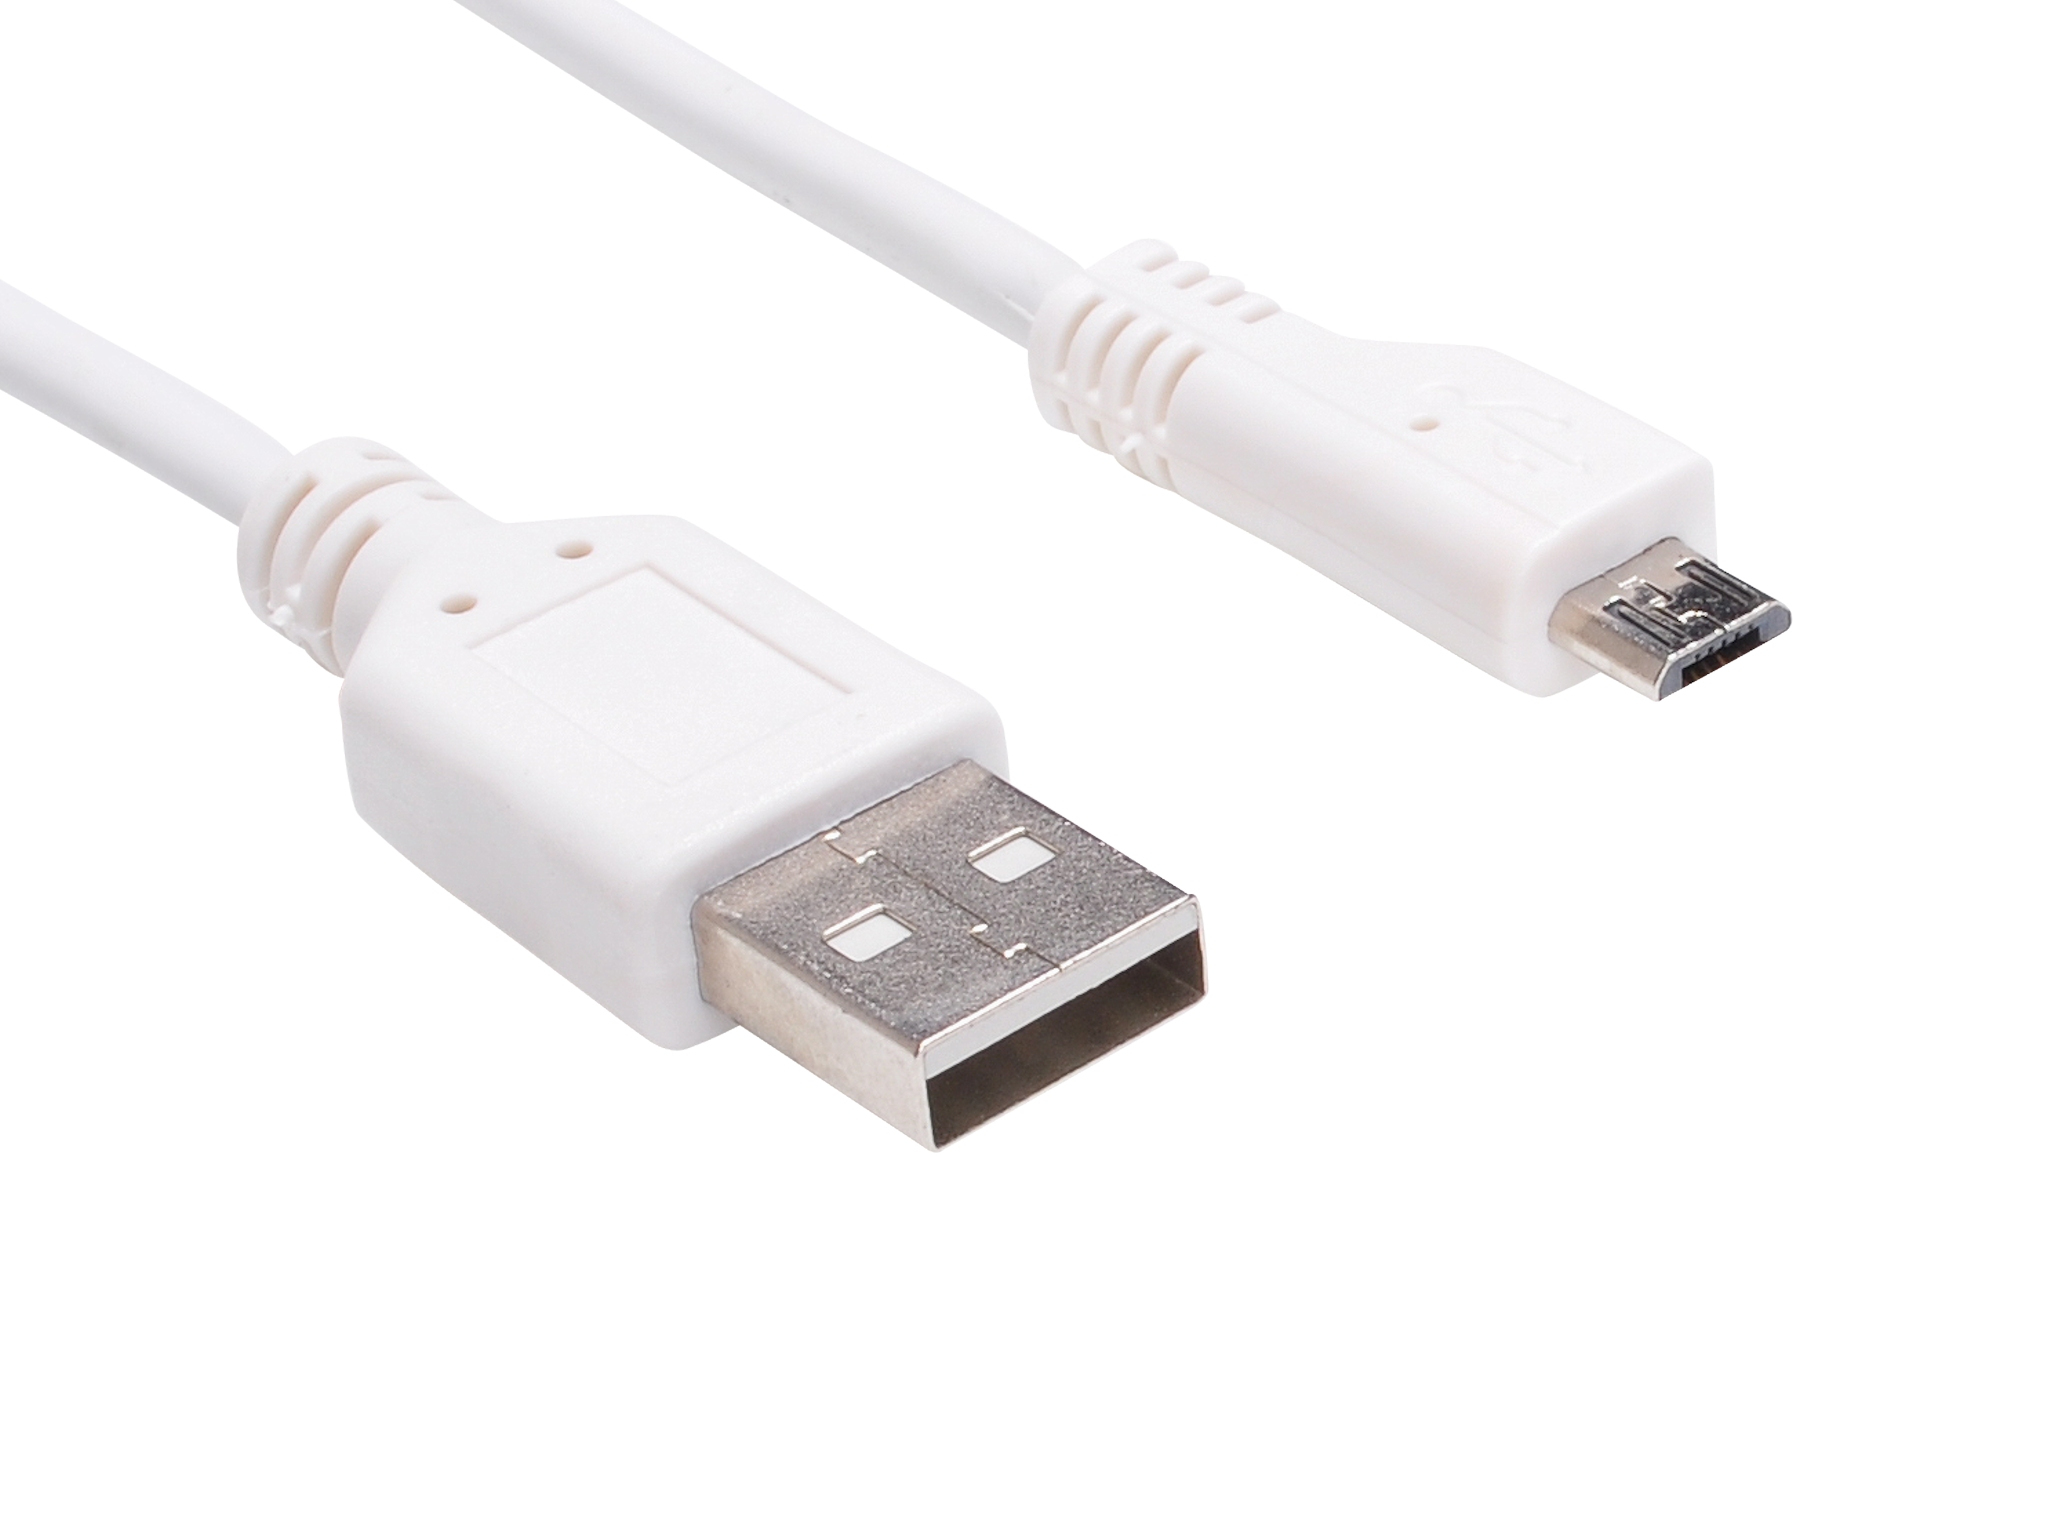 Sandberg Micro USB Sync & Charge Cable 1m